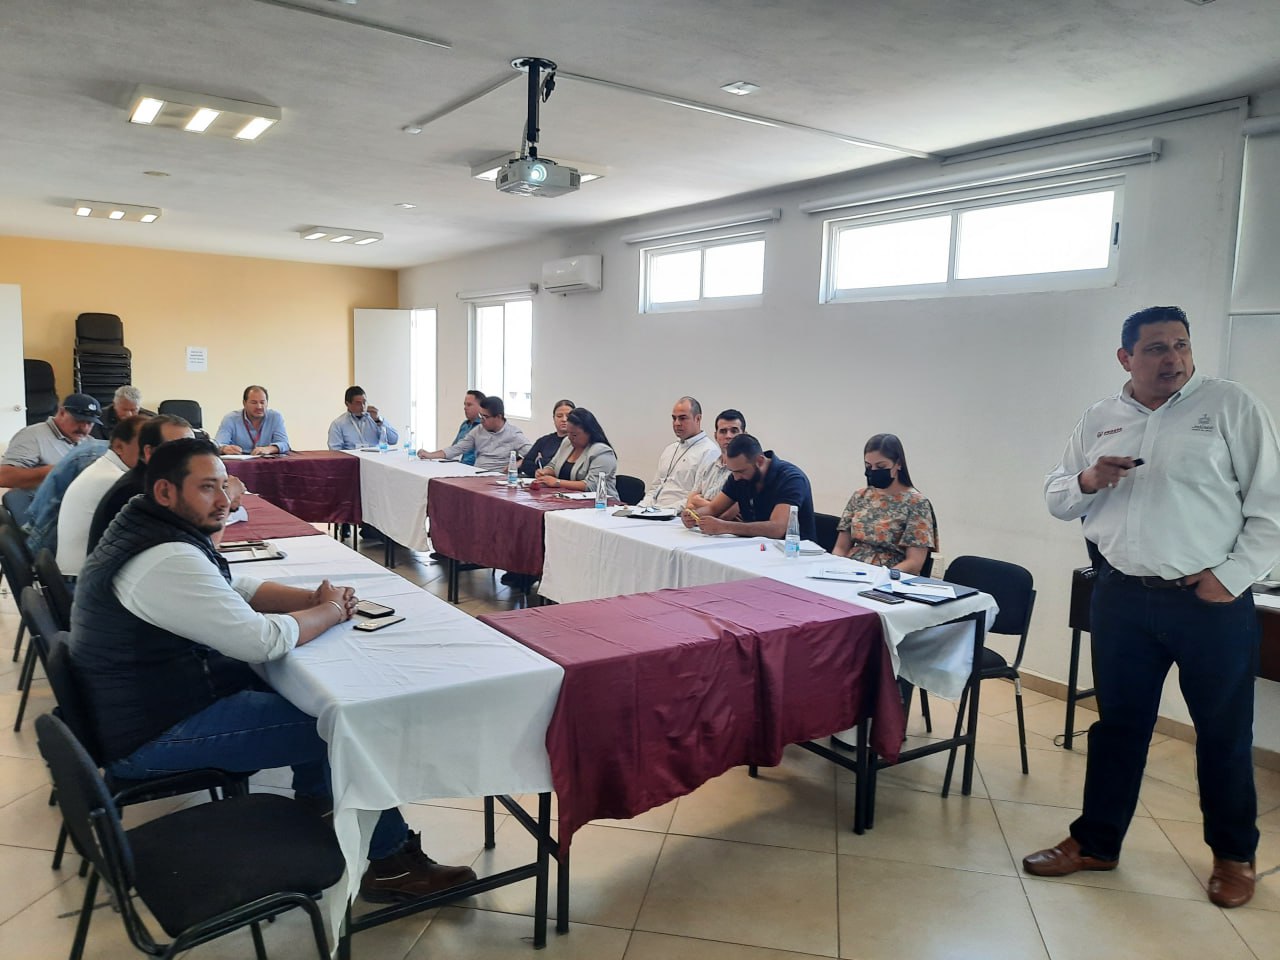 Continúa Proepa con capacitaciones y reuniones con los municipios en atención al Área de Intervención Prioritaria del Río Santiago